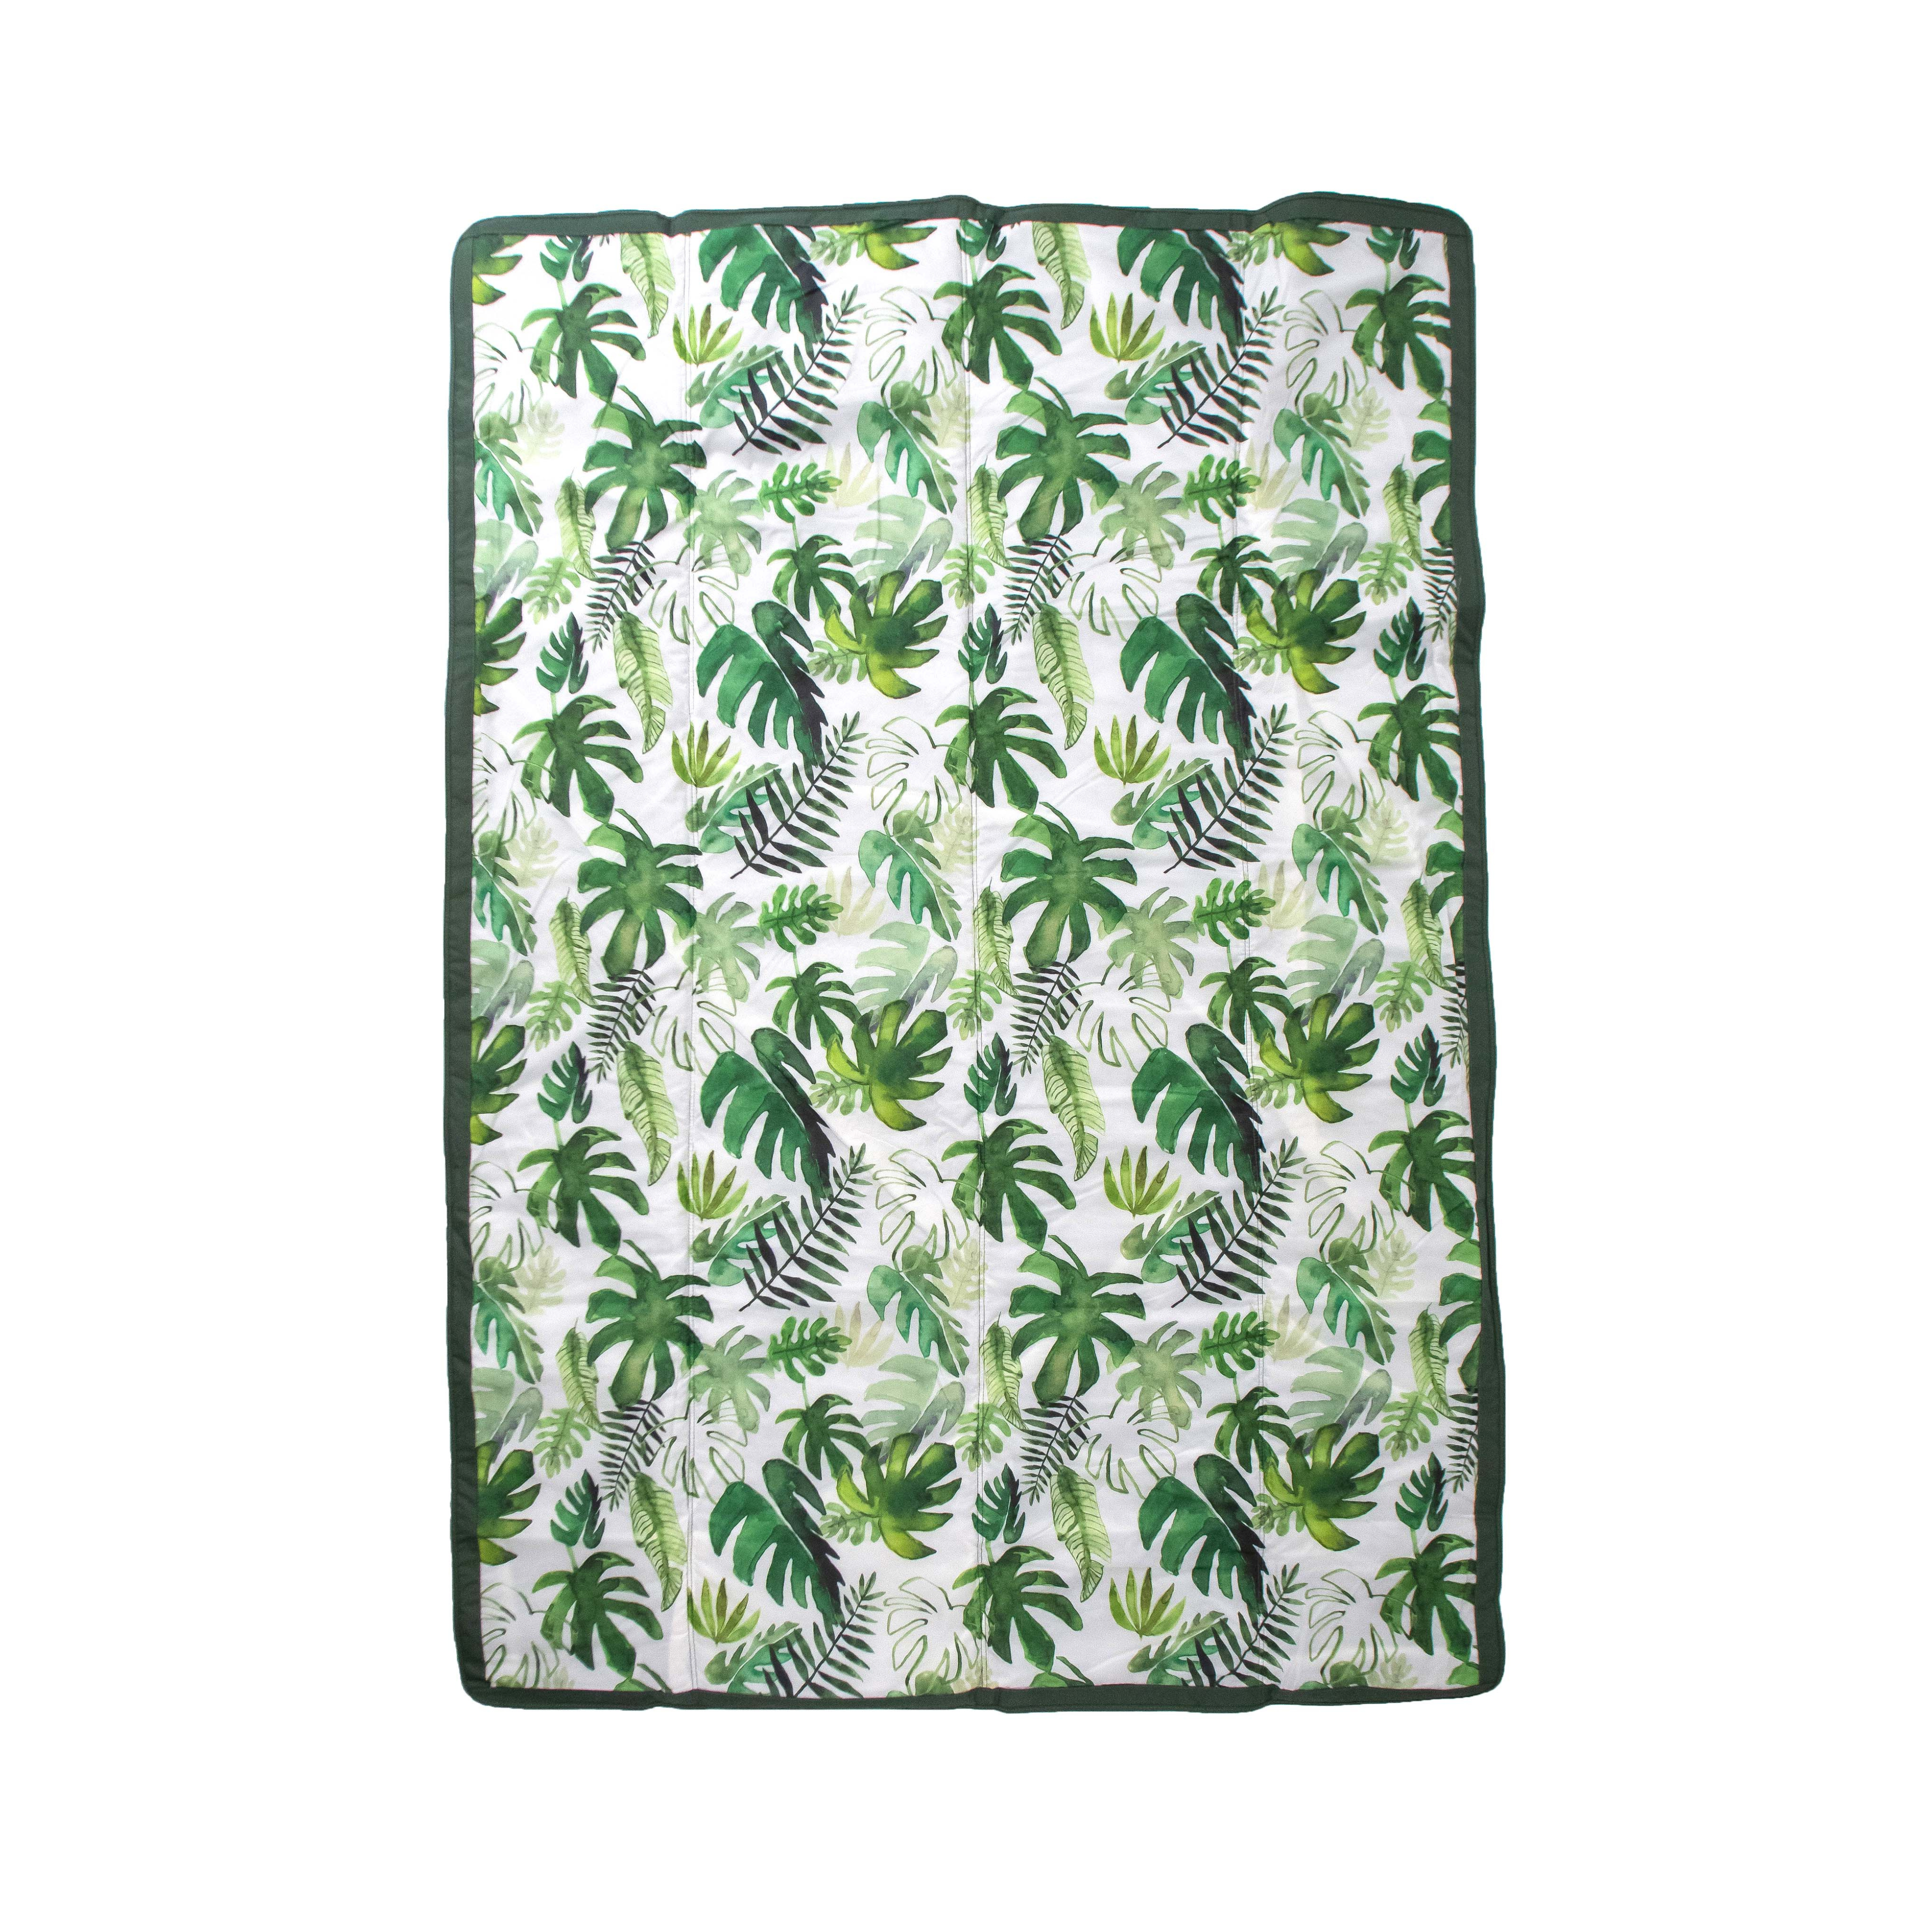 150 x 210 cm Outdoor-Decke - Tropical Leaf